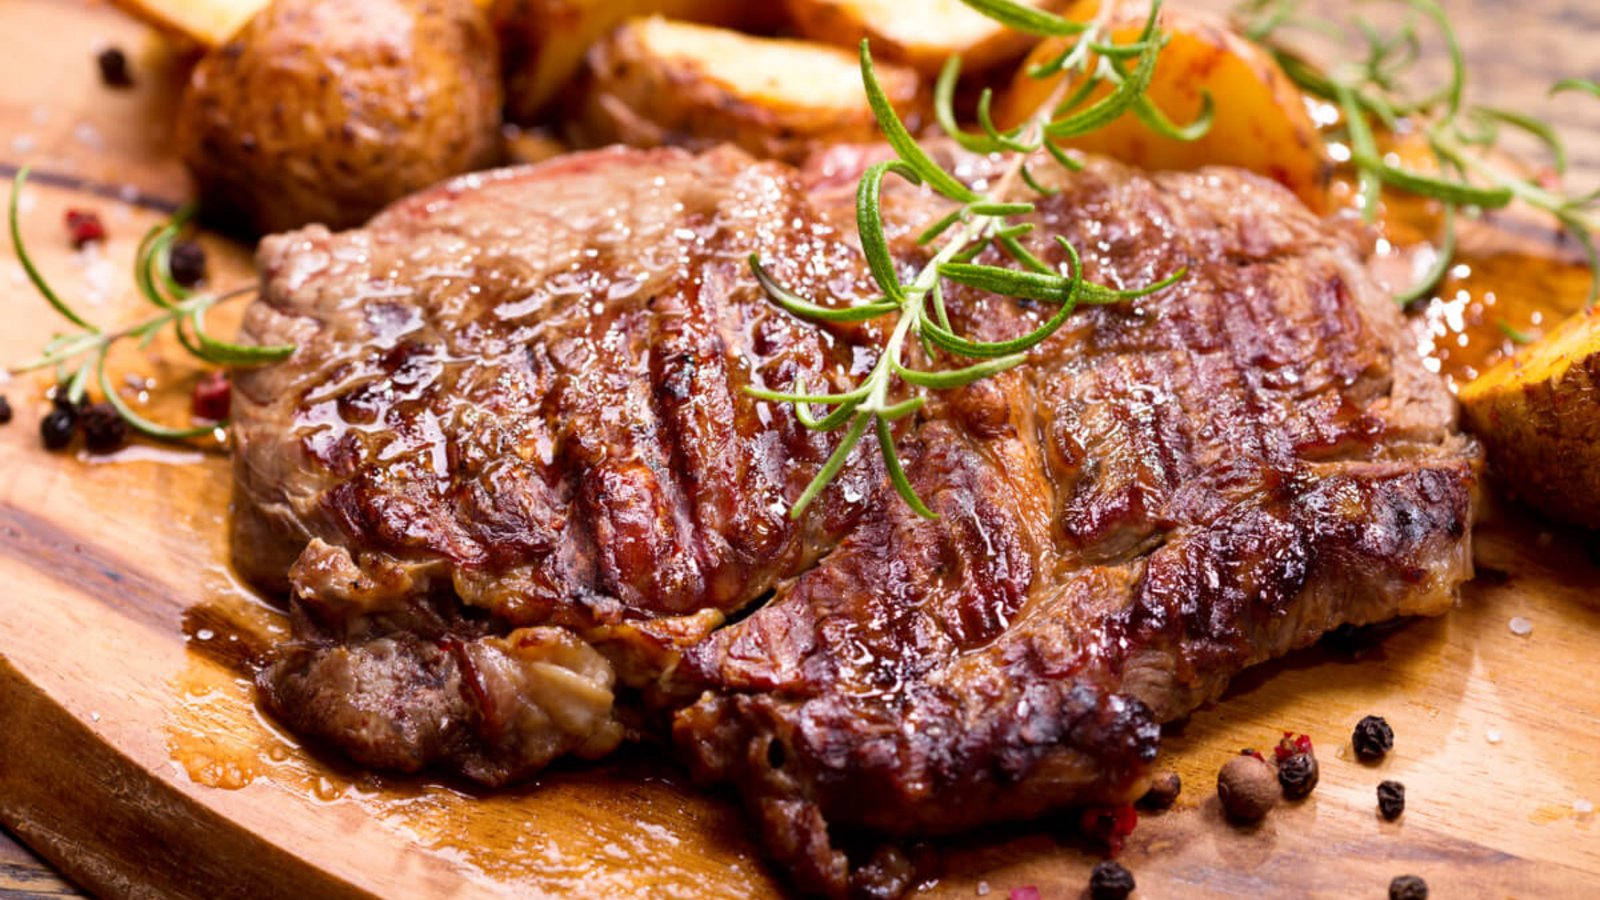 So frieren Sie gebratenes Fleisch richtig ein. Erfahren Sie, worauf Sie beim Einfrieren und Auftauen von gebratenem Fleisch achten müssen.Foto: Nitr / Shutterstock.com